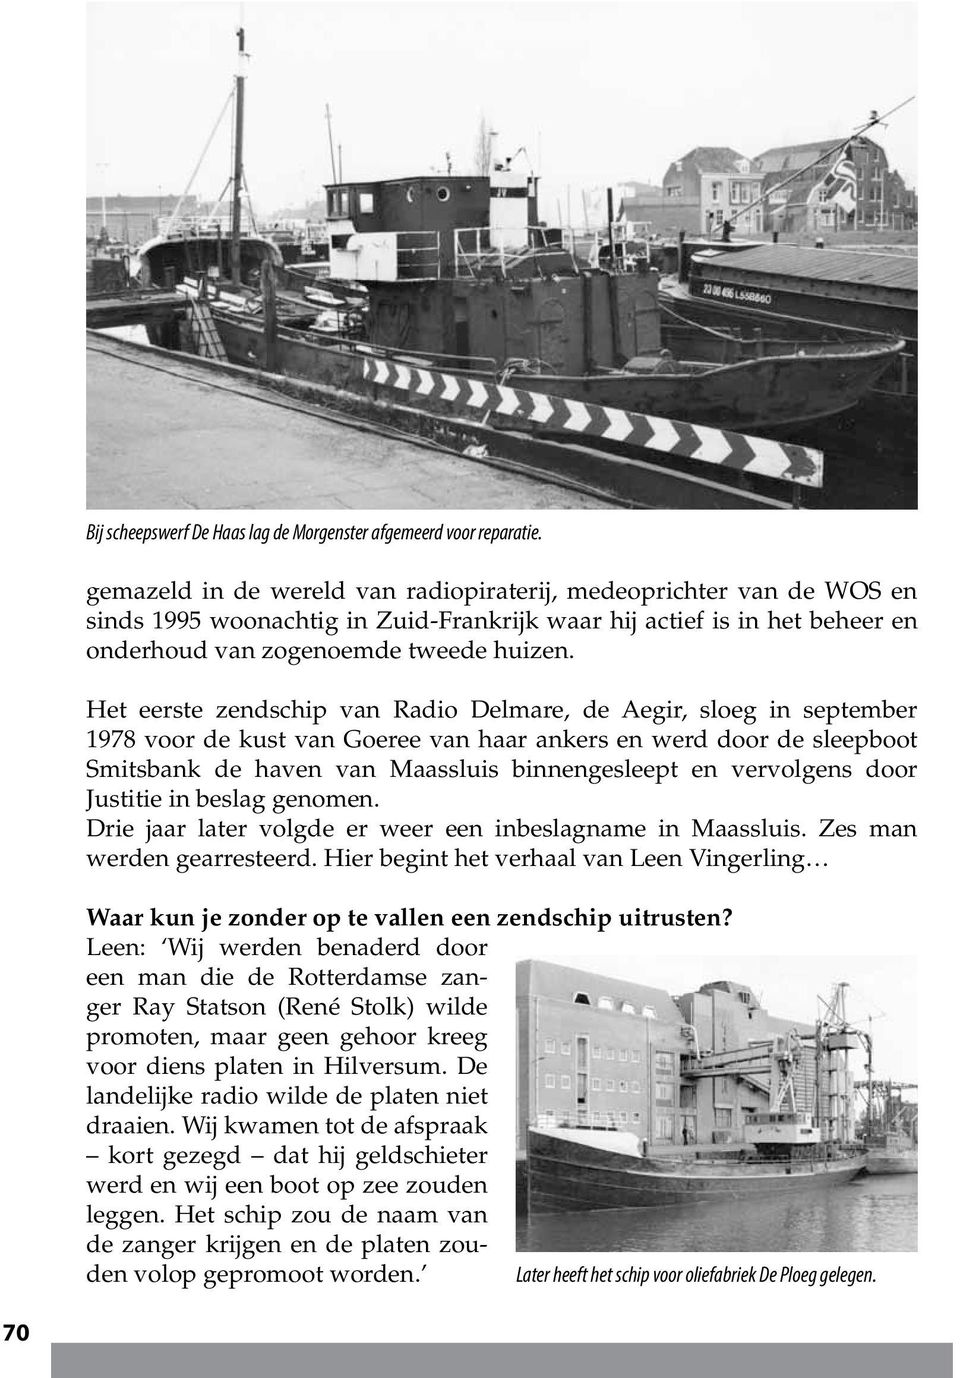 Het eerste zendschip van Radio Delmare, de Aegir, sloeg in september 1978 voor de kust van Goeree van haar ankers en werd door de sleepboot Smitsbank de haven van Maassluis binnengesleept en